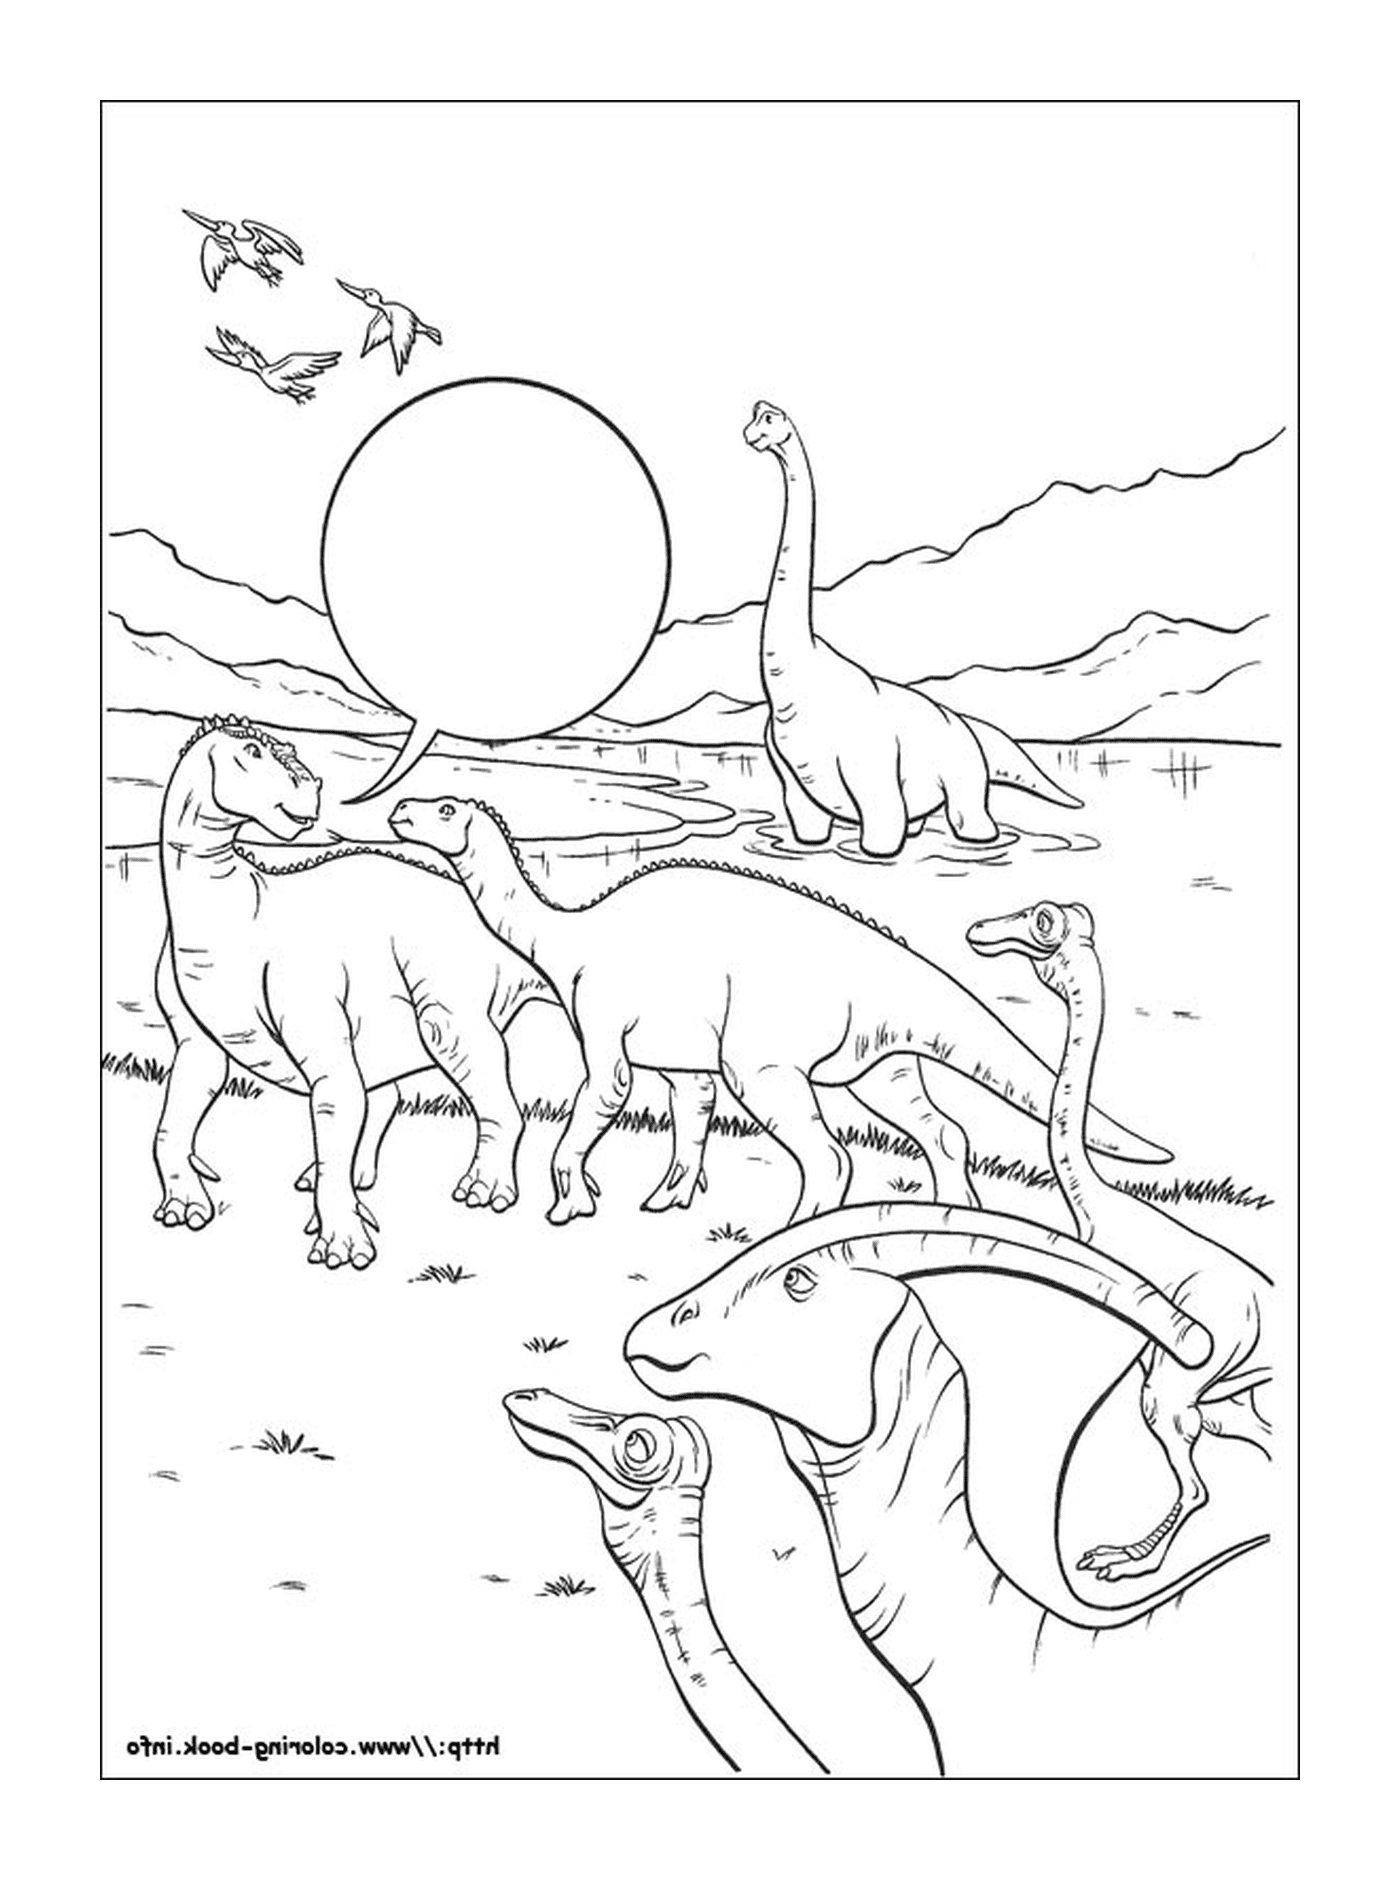  Muchos dinosaurios visibles en esta imagen 